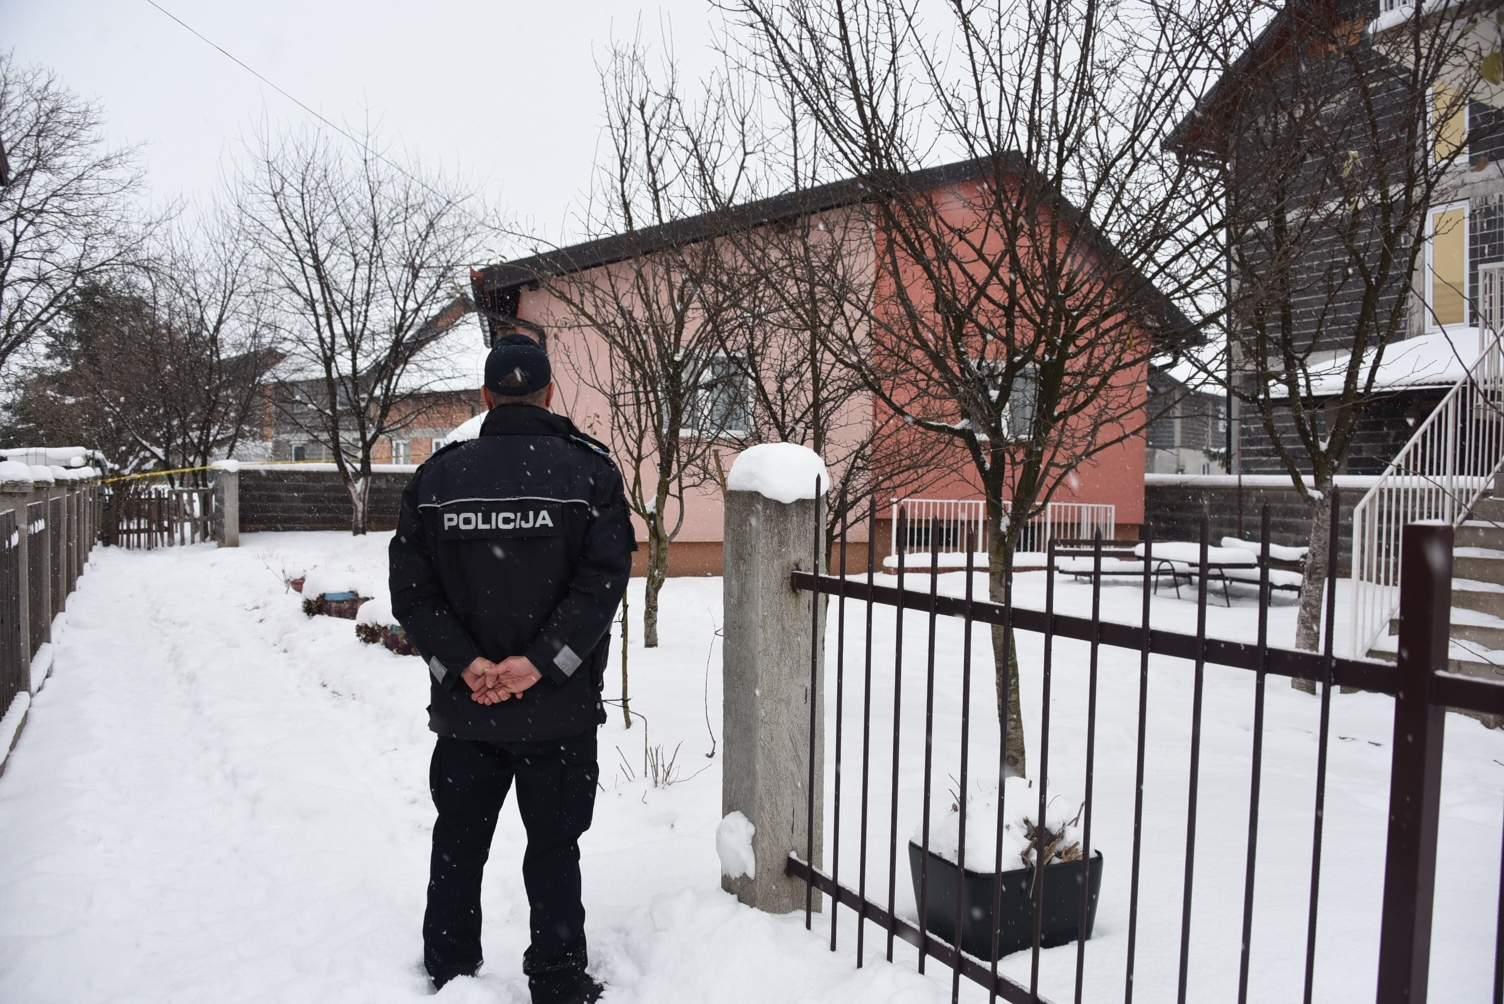 Policija i jučer bila ispred kuće u kojoj se dogodio zločin - Avaz